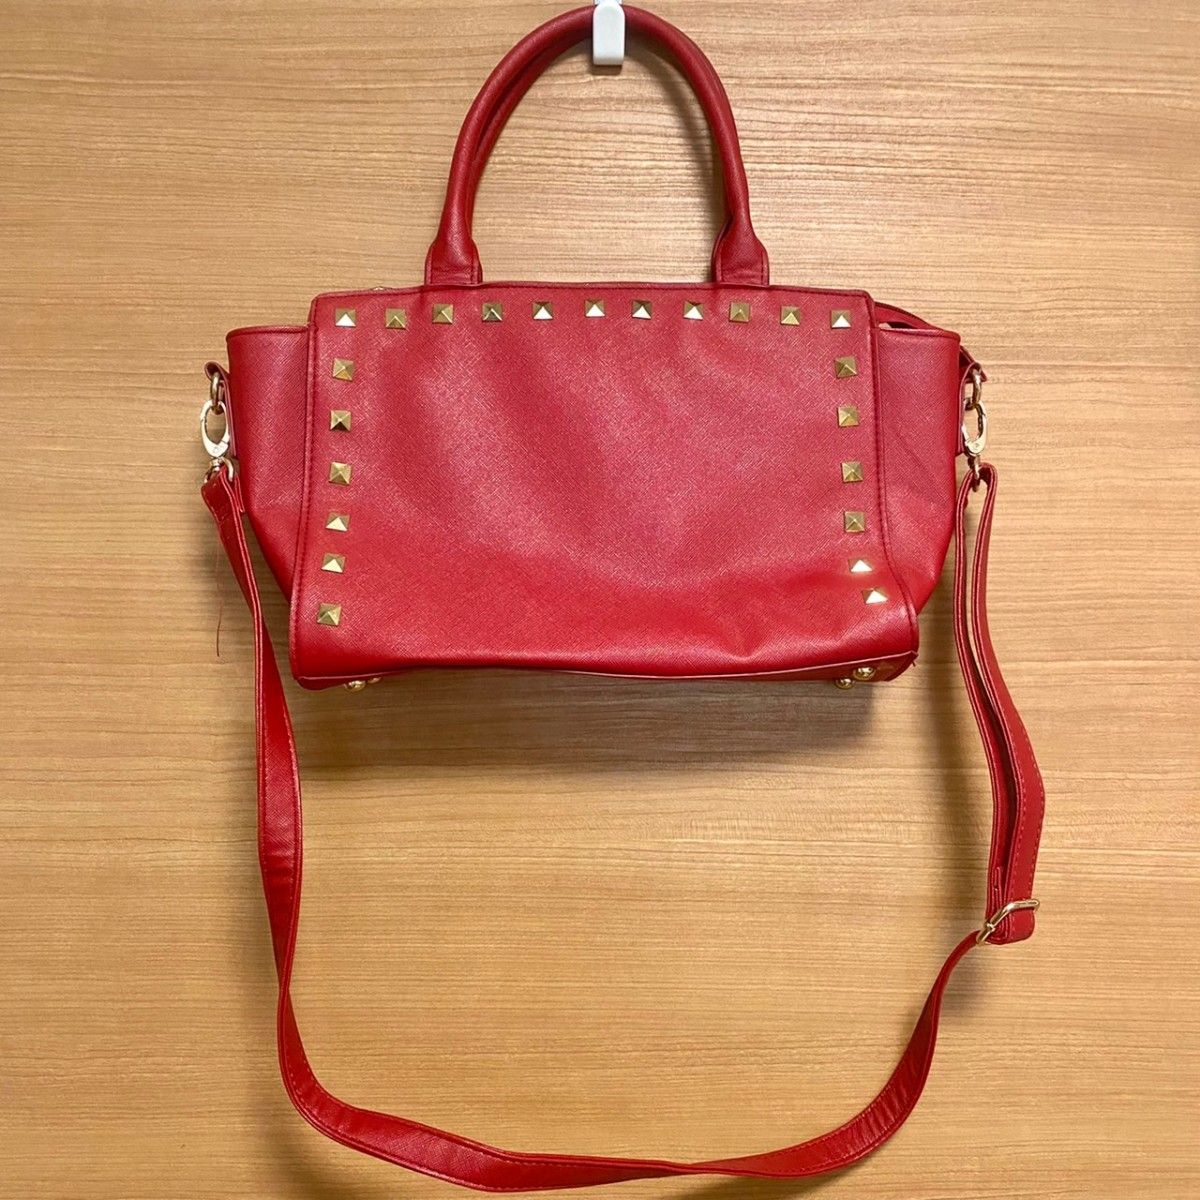 ハンドバッグ ショルダーバッグ 赤 レディース スタッズ付き 可愛い レッド 激安 鞄 カバン バッグ オシャレ